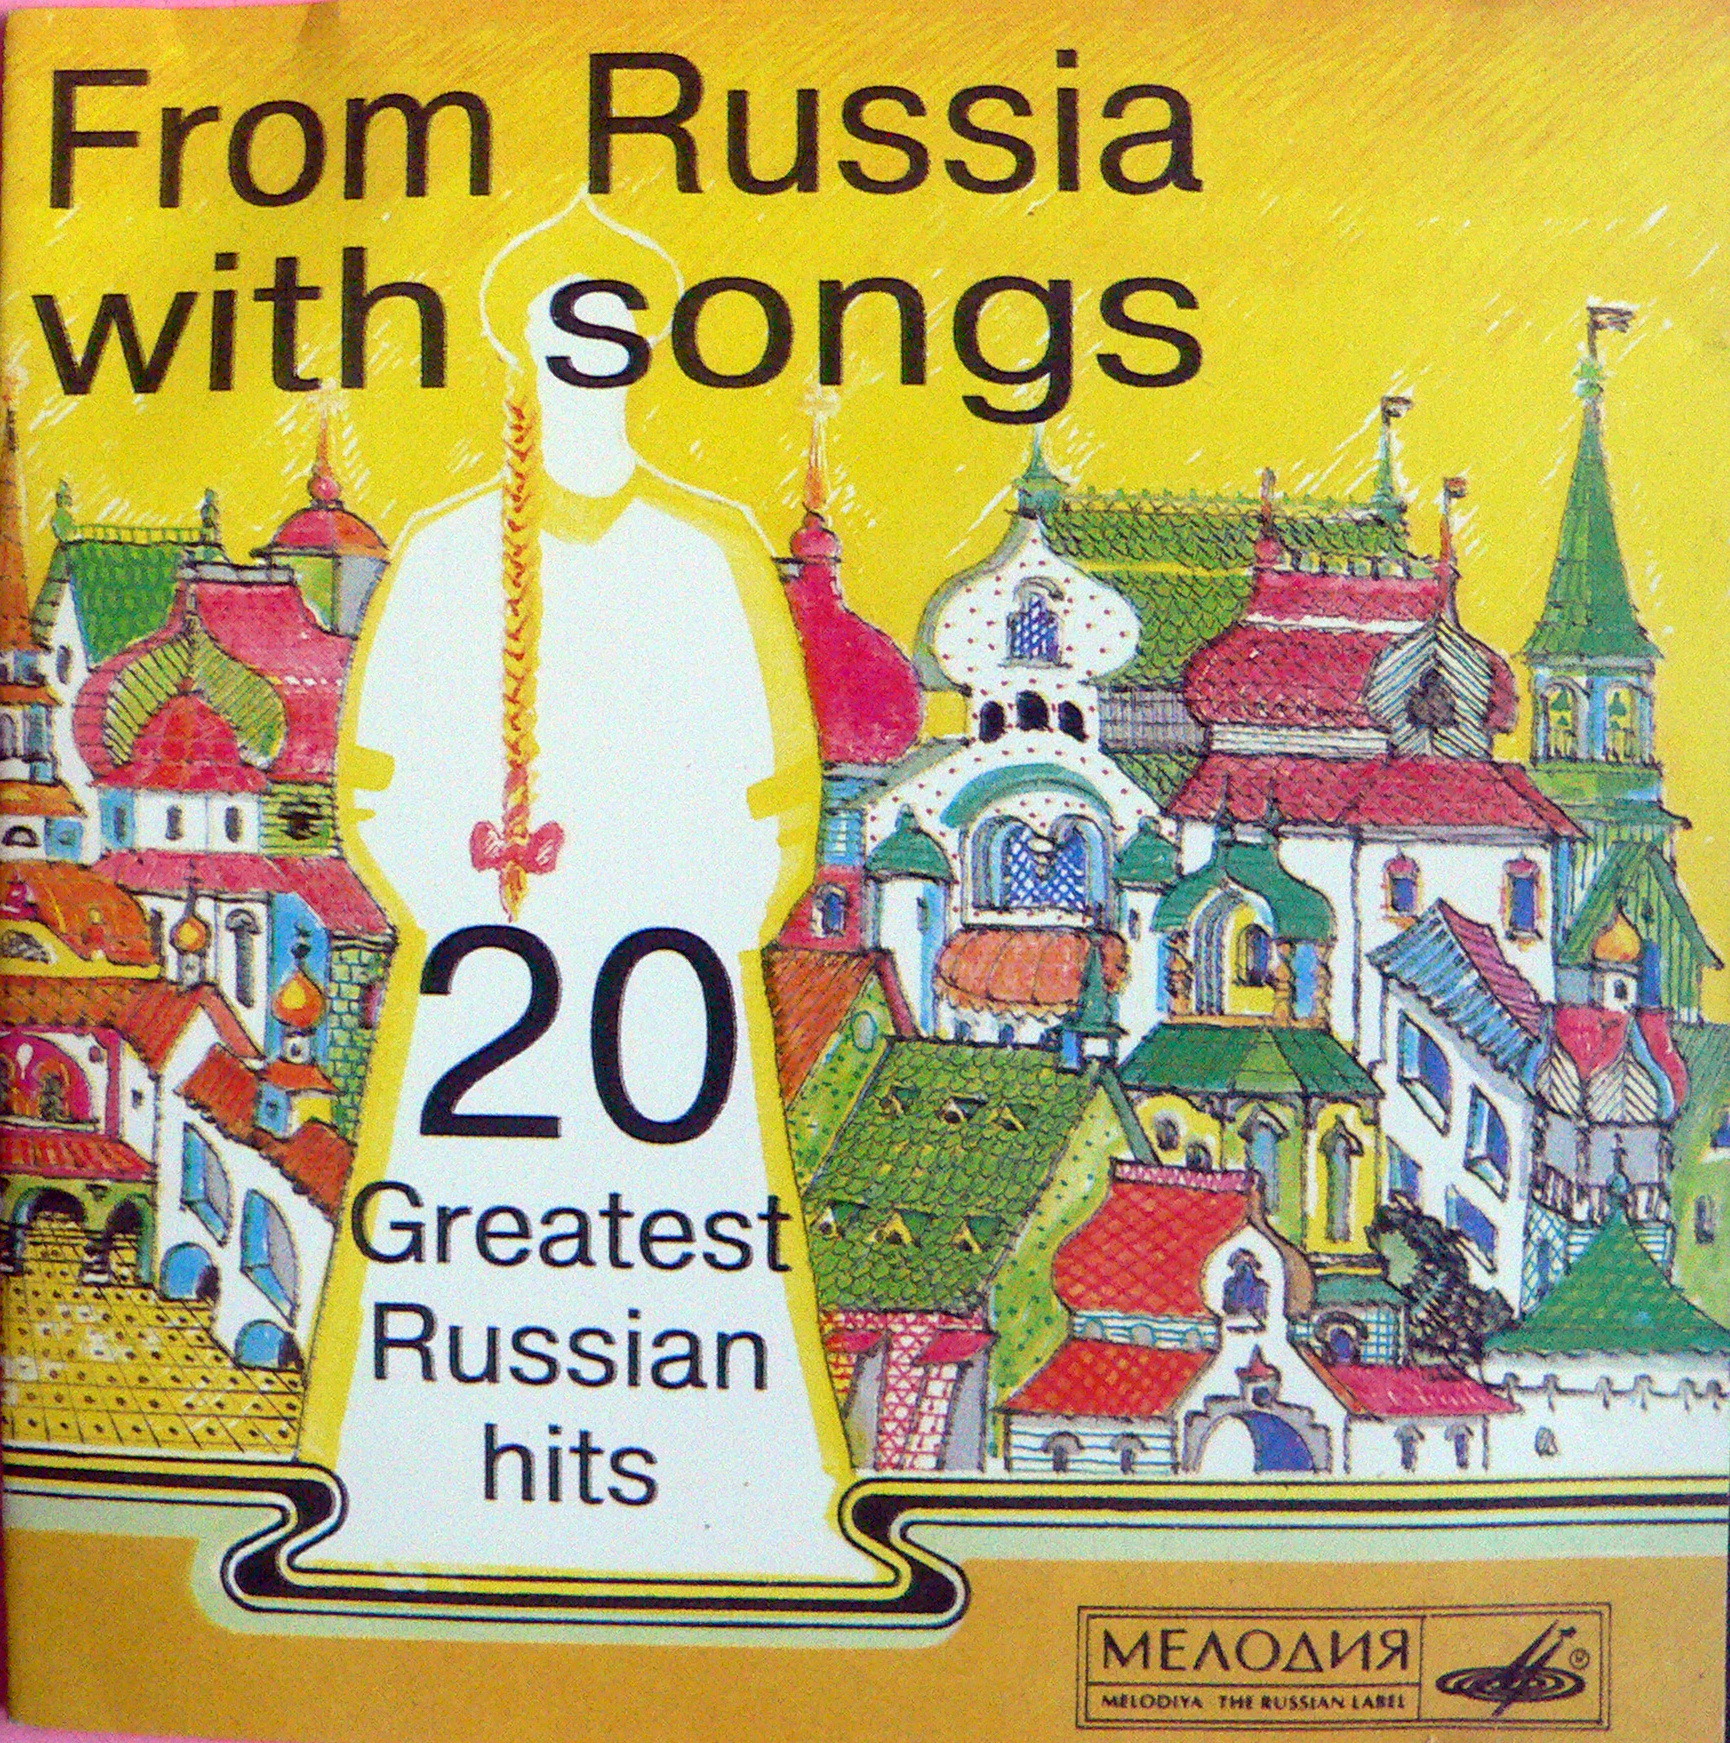 Из России с песней